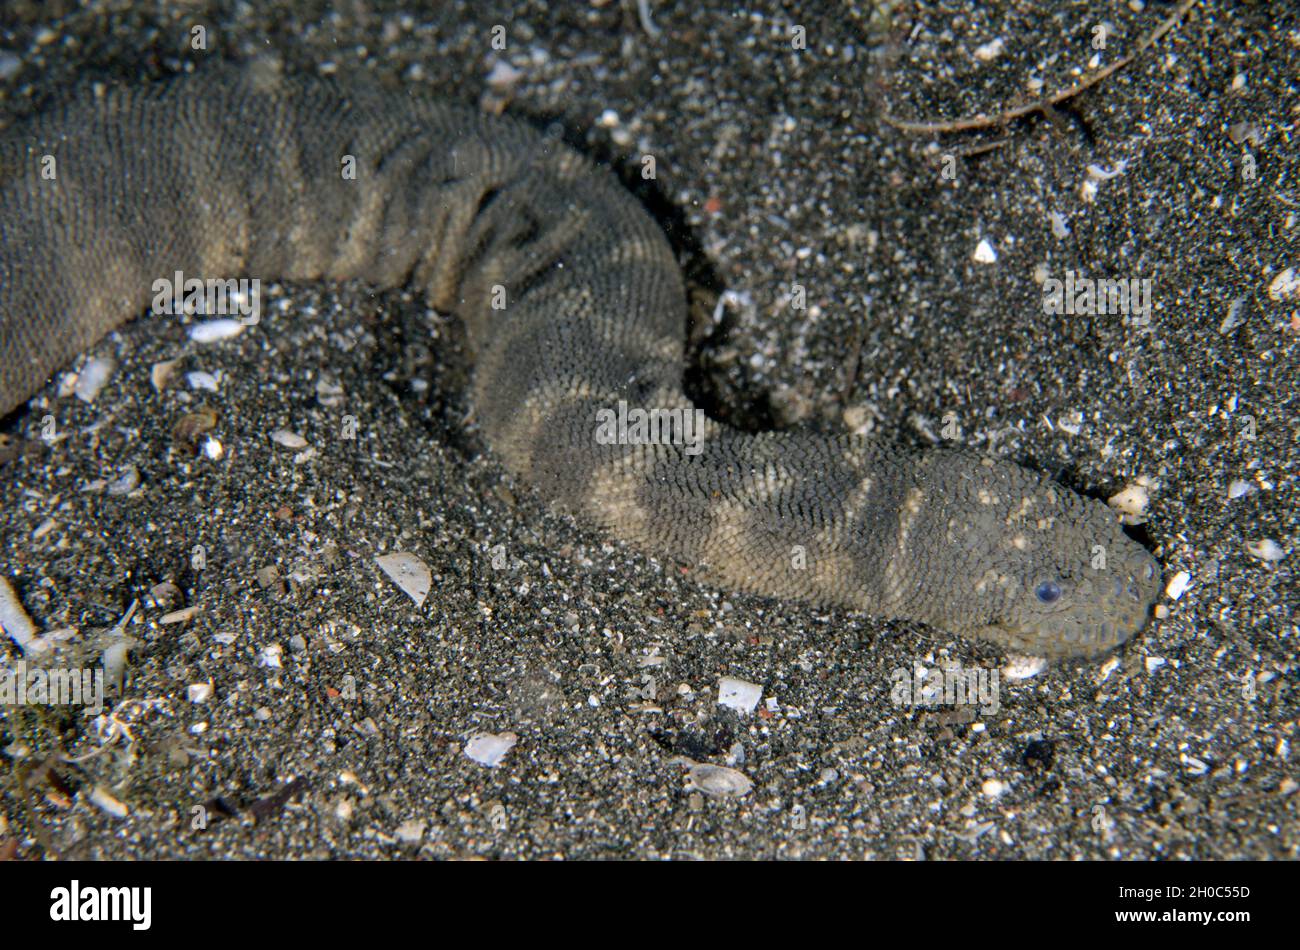 Marine File Snake (Acrochordus granulatus), nocturnal, non-venomous piscivore that kills by constriction, Secret Bay dive site, Gilimanuk, Jembrana Re Stock Photo